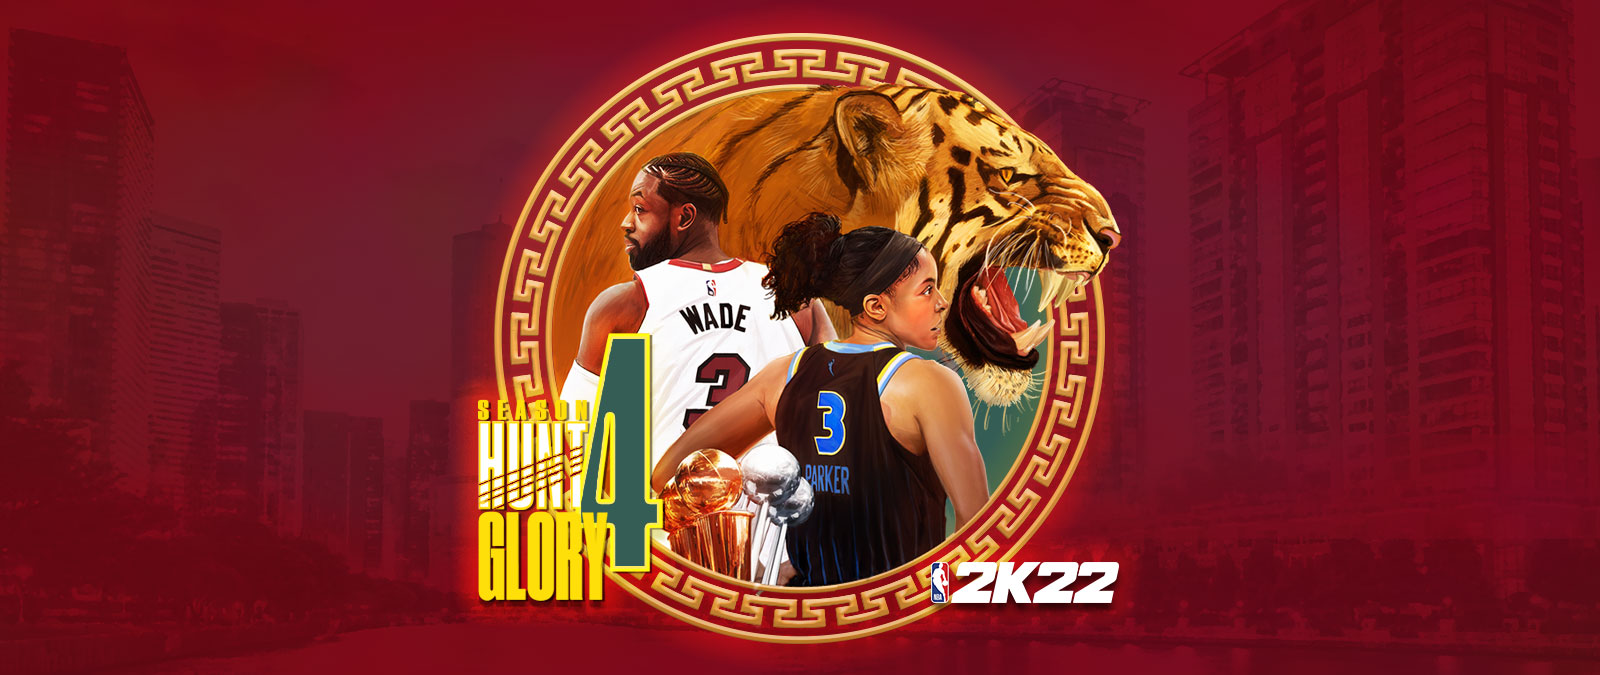 NBA 2K22, Season 4: Hunt 4 Glory, pyöreä graafinen elementti punasävyisen kaupunkimaiseman päällä, kuvassa muriseva tiikeri sekä Dwayne Wade ja Candace Parker selin katsojaan päin. 